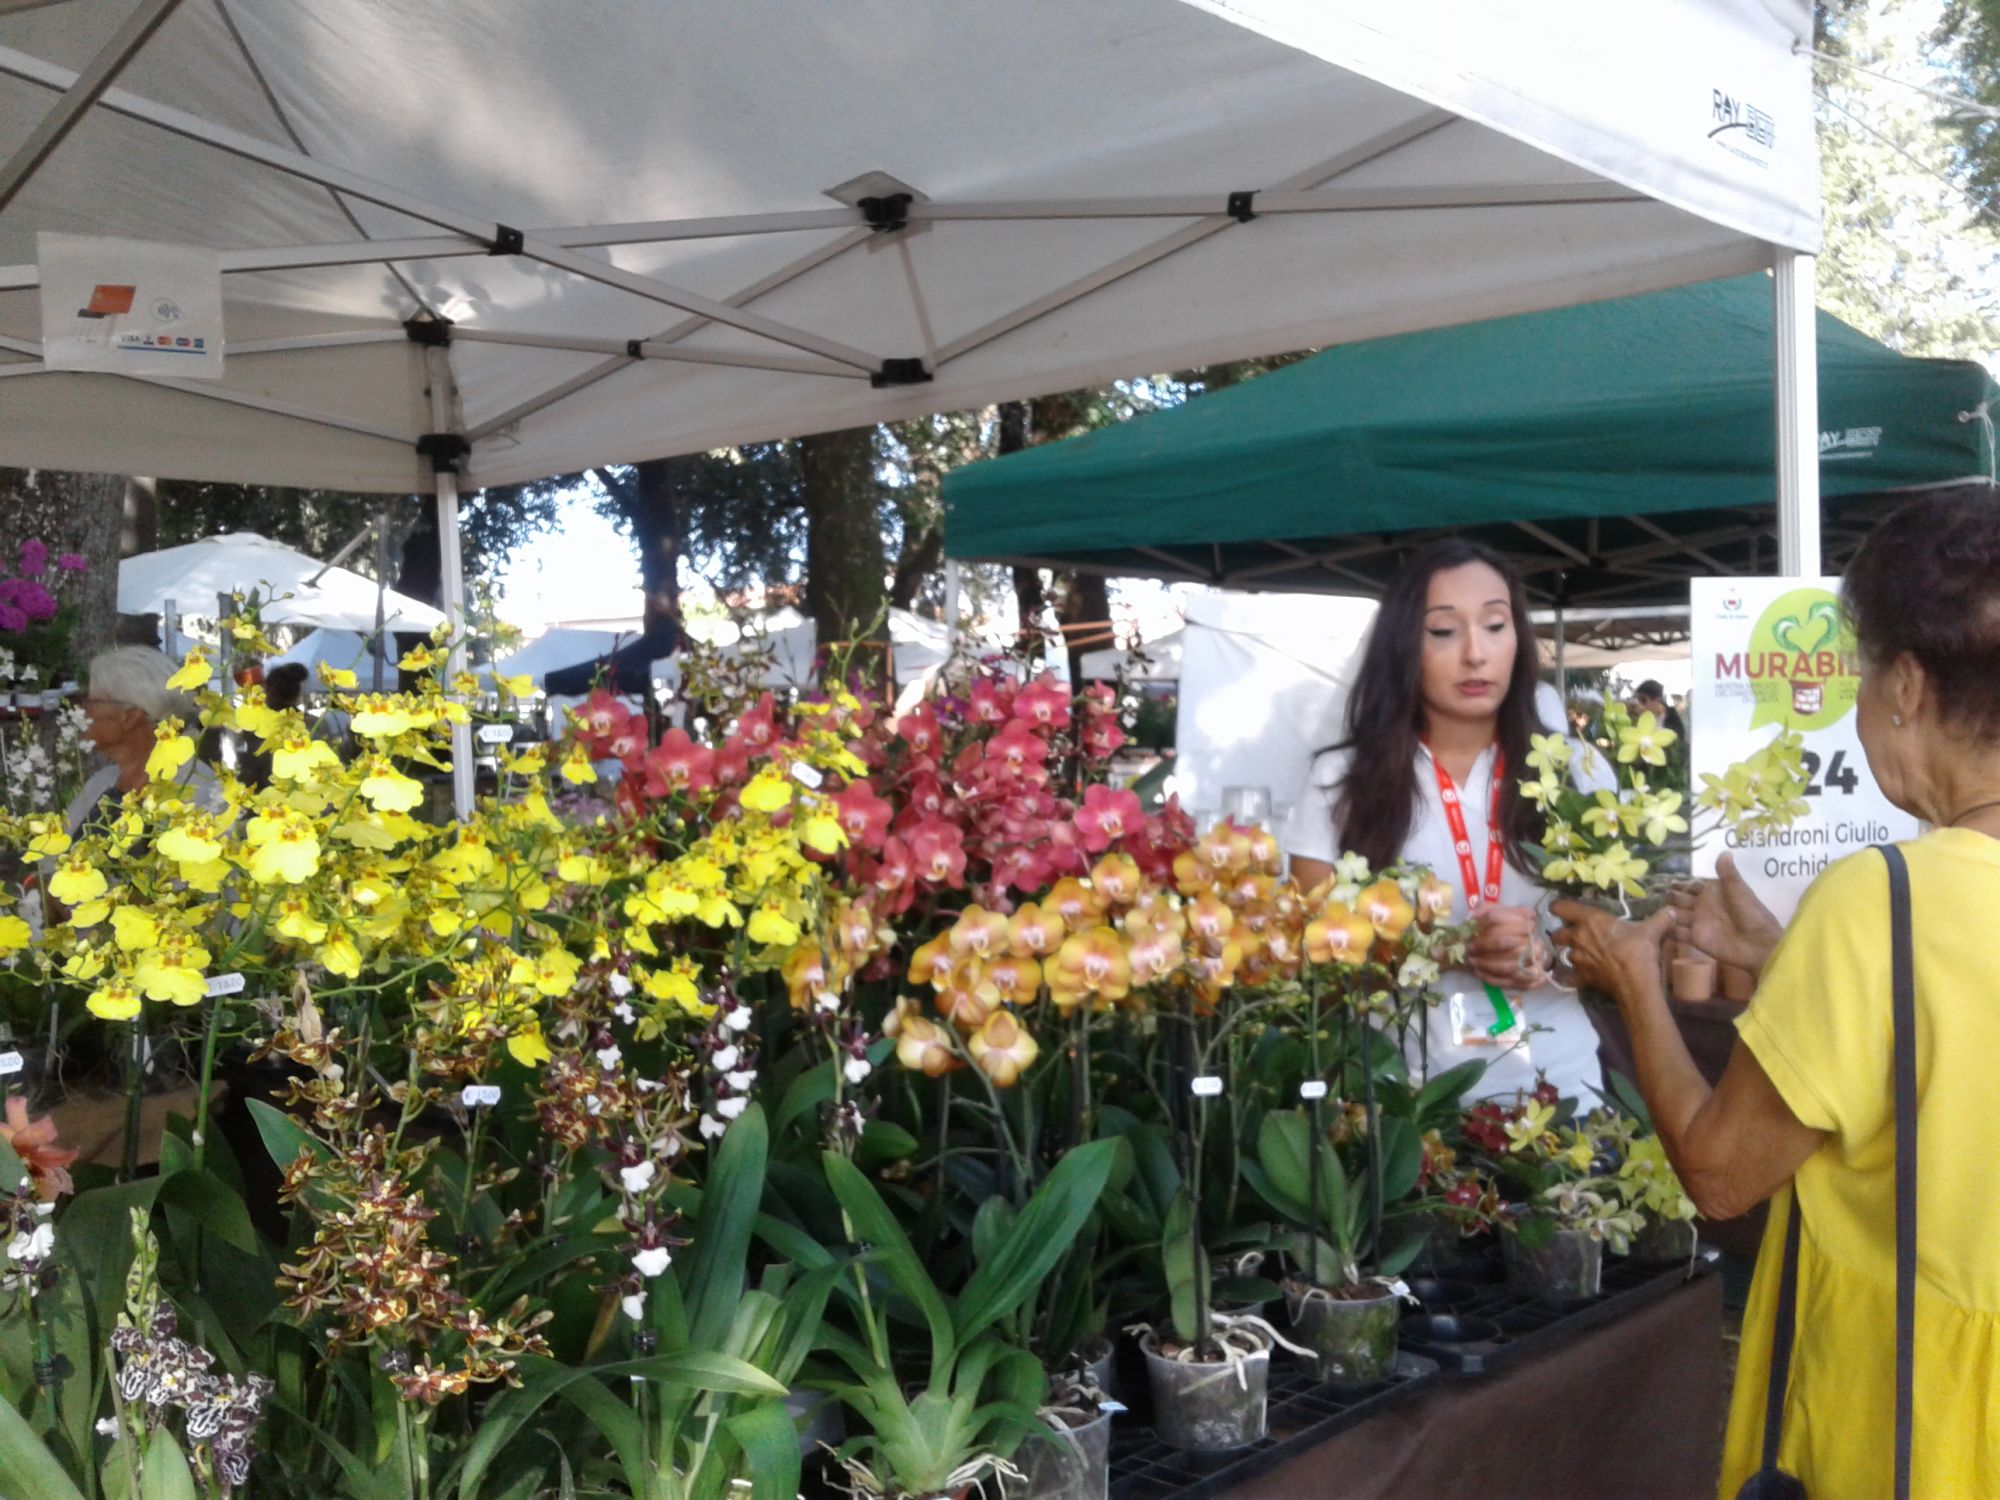 Murabilia: Dagli attrezzi giganti, ai giardini effimeri; dalle orchidee giapponesi alla mostra di Aspidistre, fino alle tante curiosità botaniche